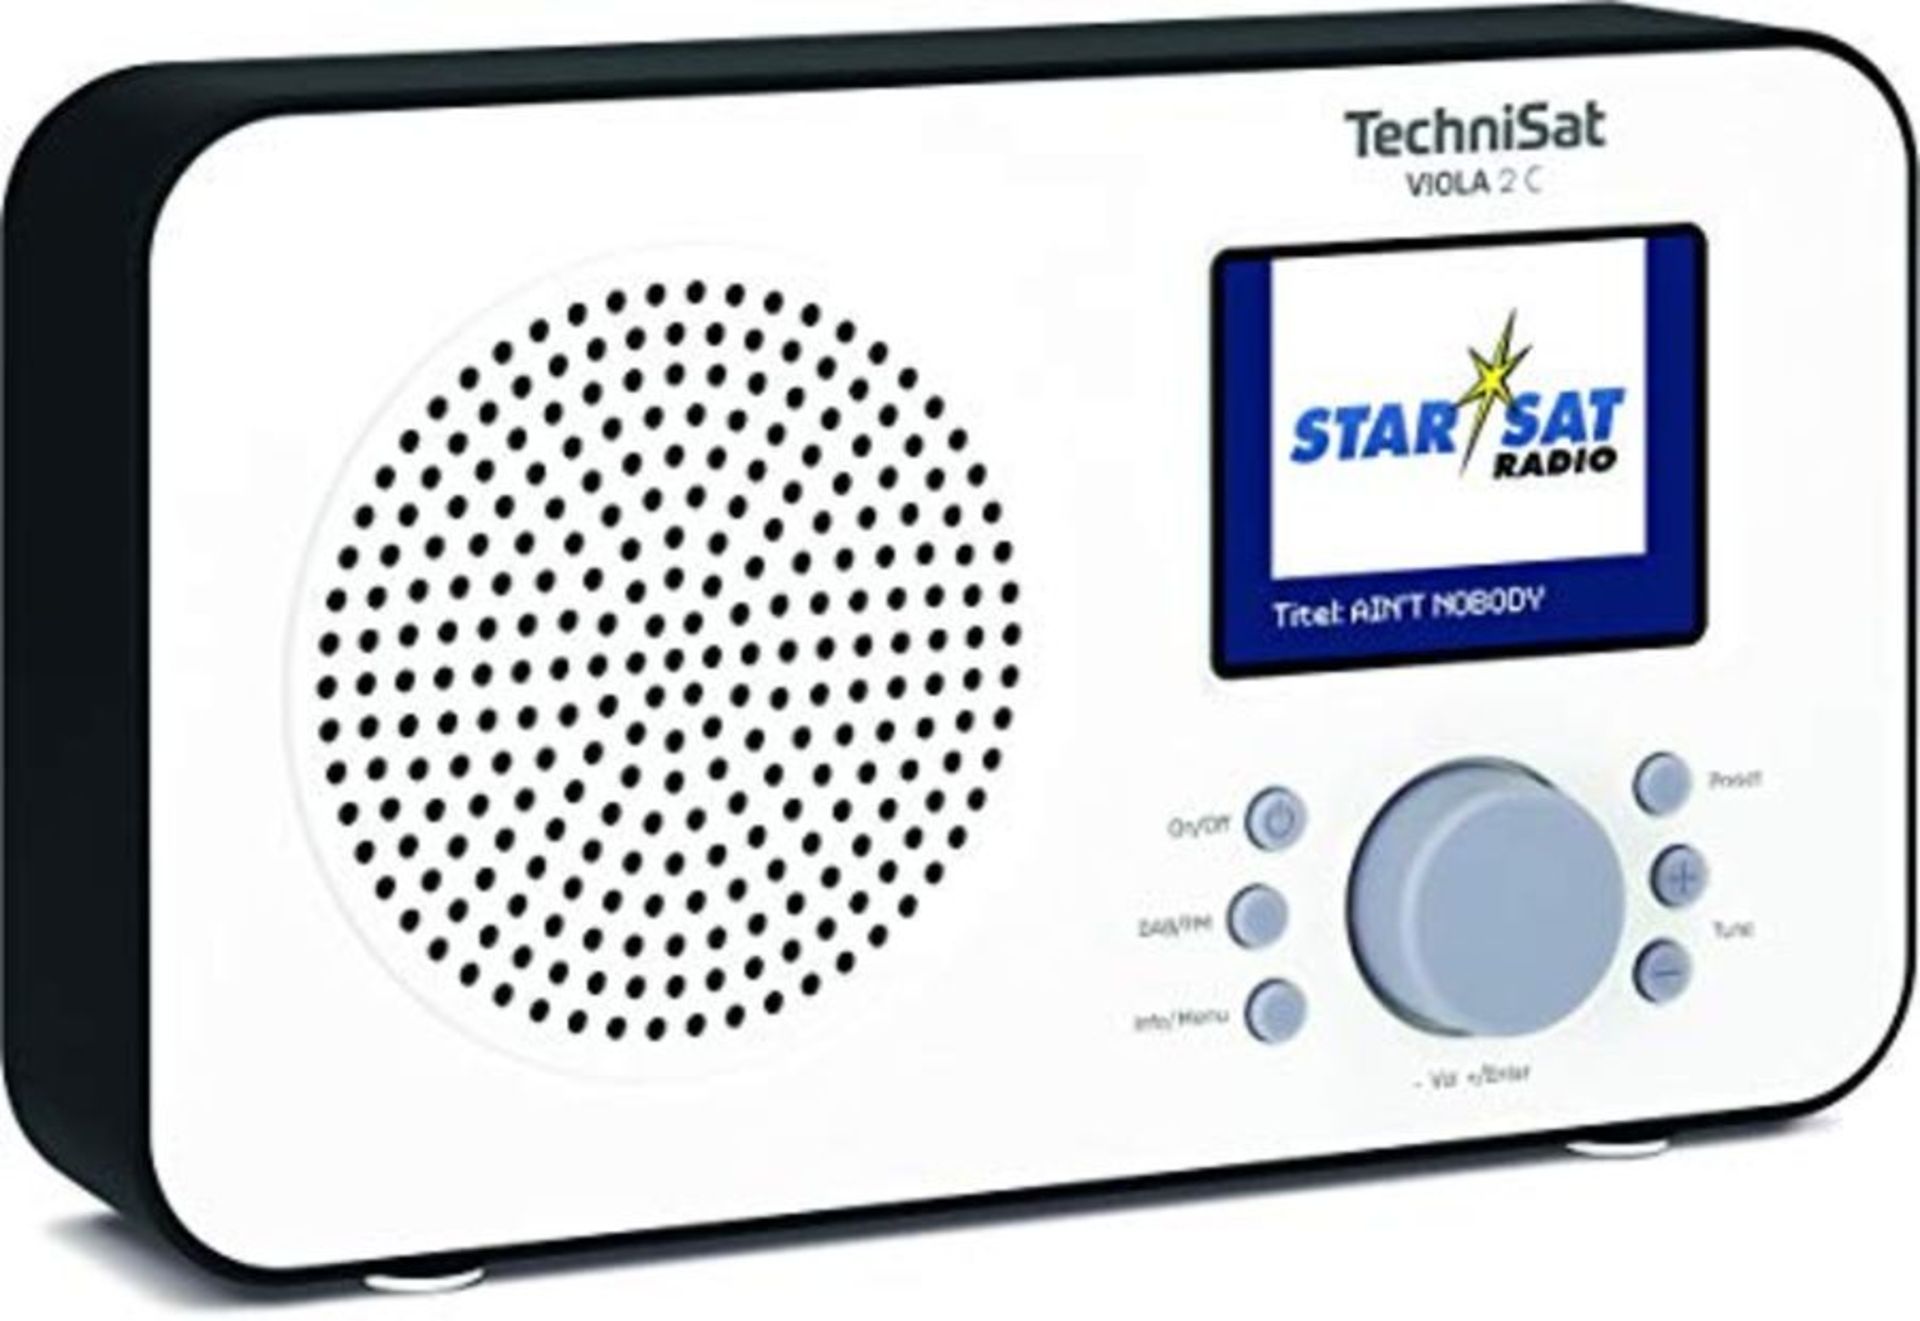 TechniSat VIOLA 2 Portable DAB Radio (DAB+, FM, Speaker, Headphone Jack, Two-line Disp